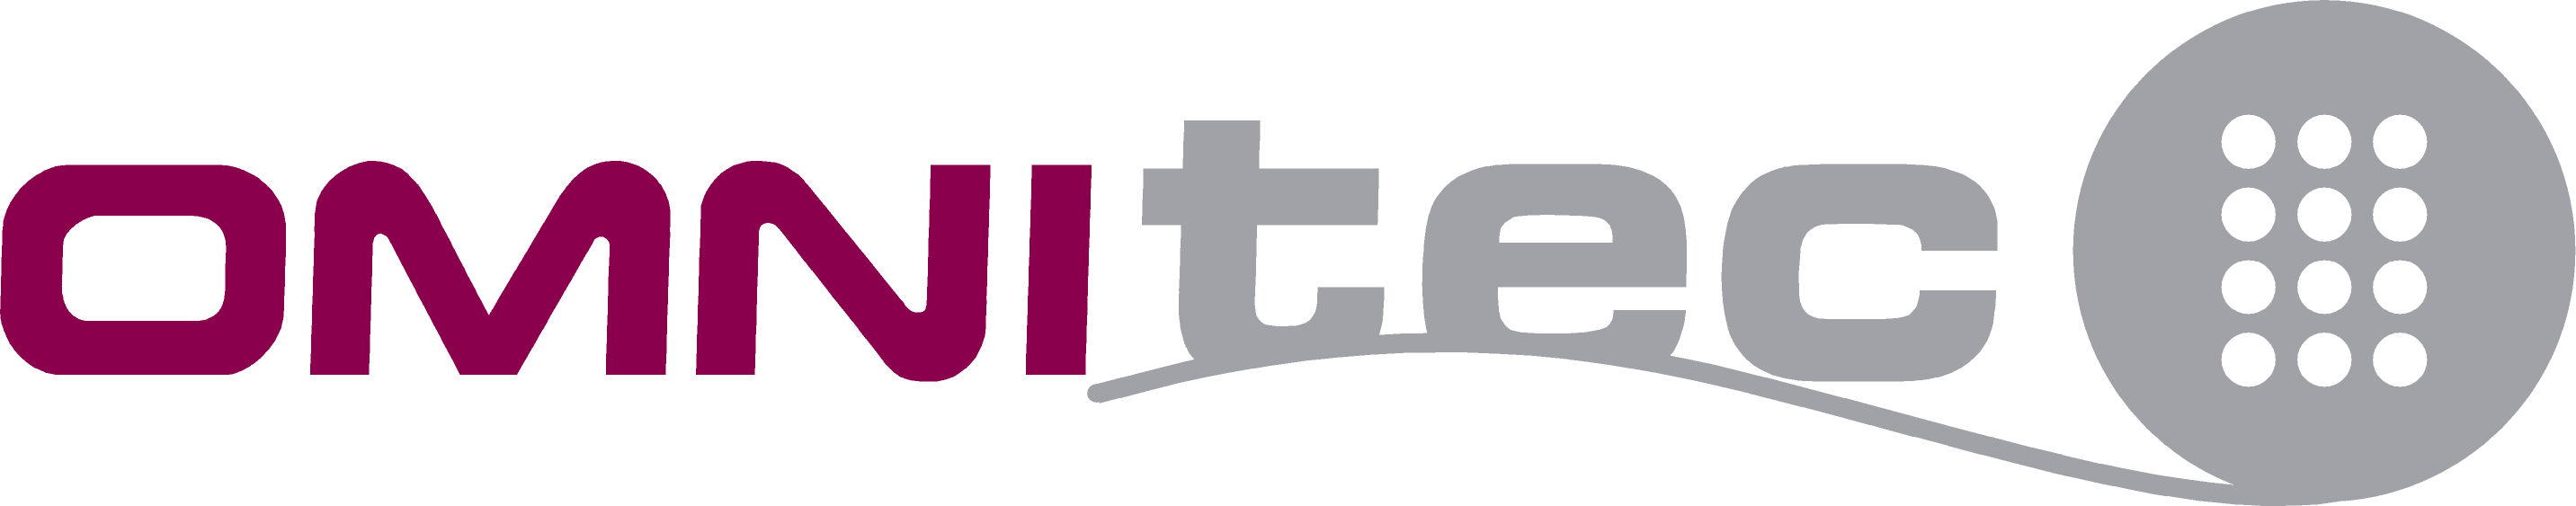 omnitec logo